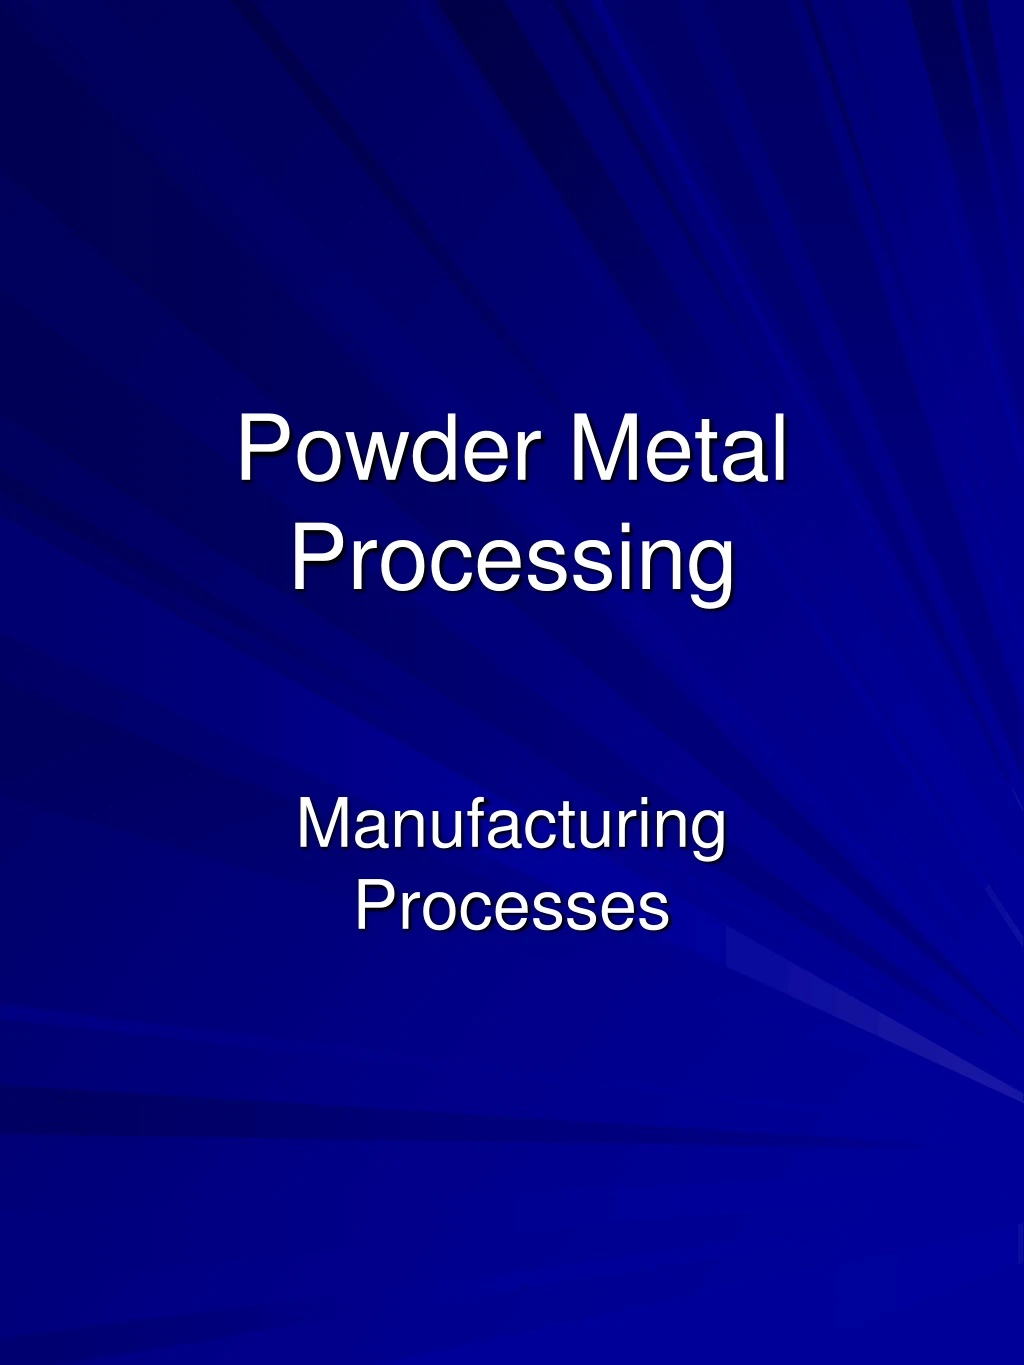 powder metal processing